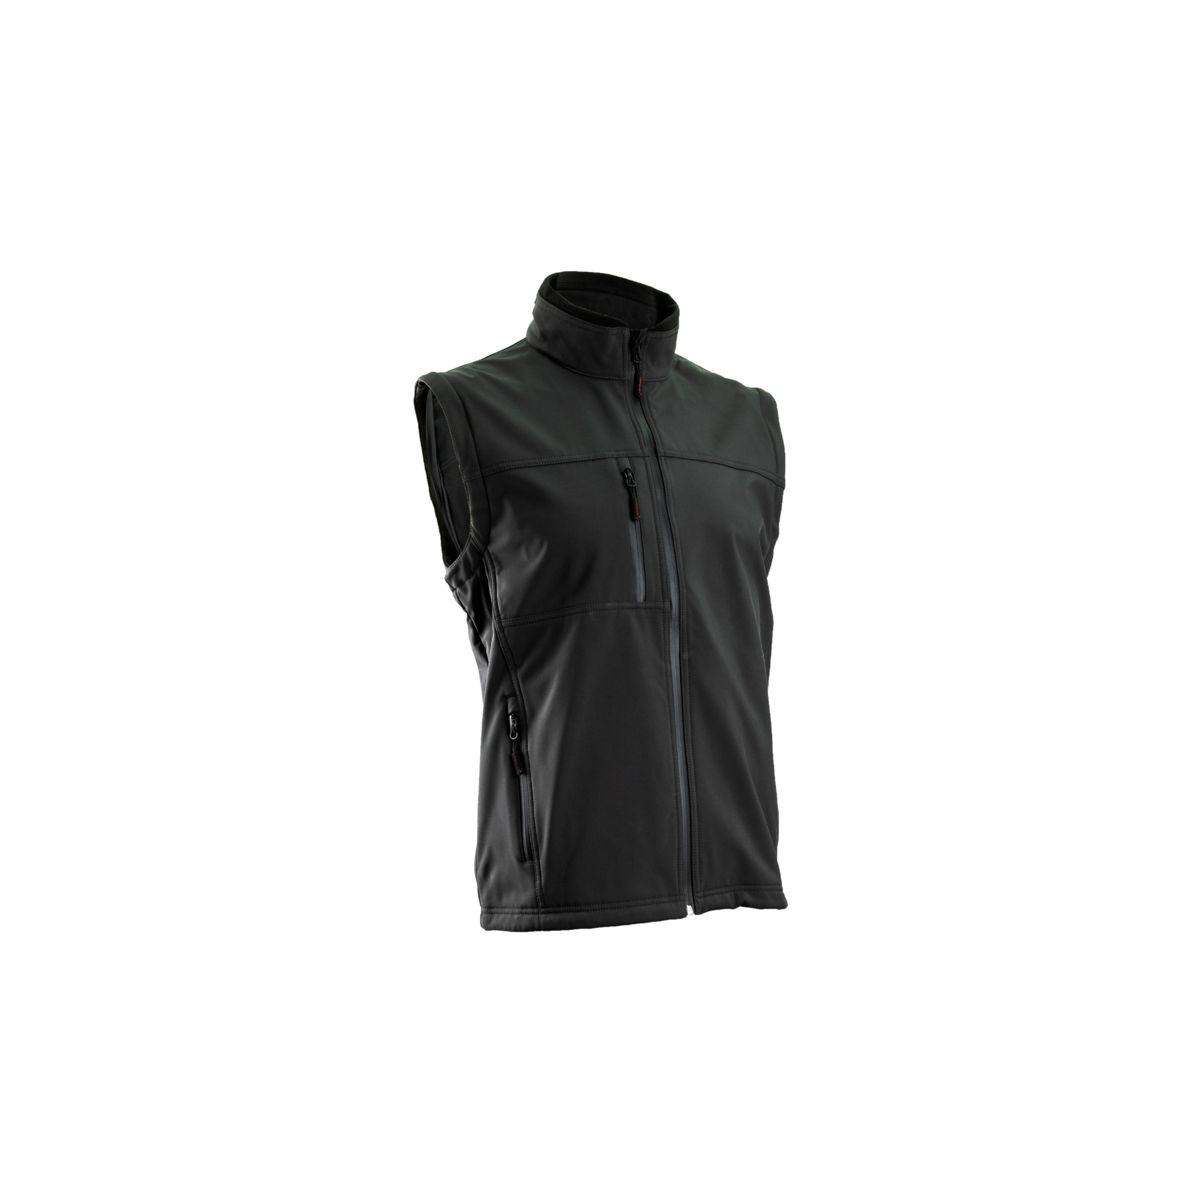 Veste YANG Softshell 2/1 noire, 310g/m² - COVERGUARD - Taille XL 1